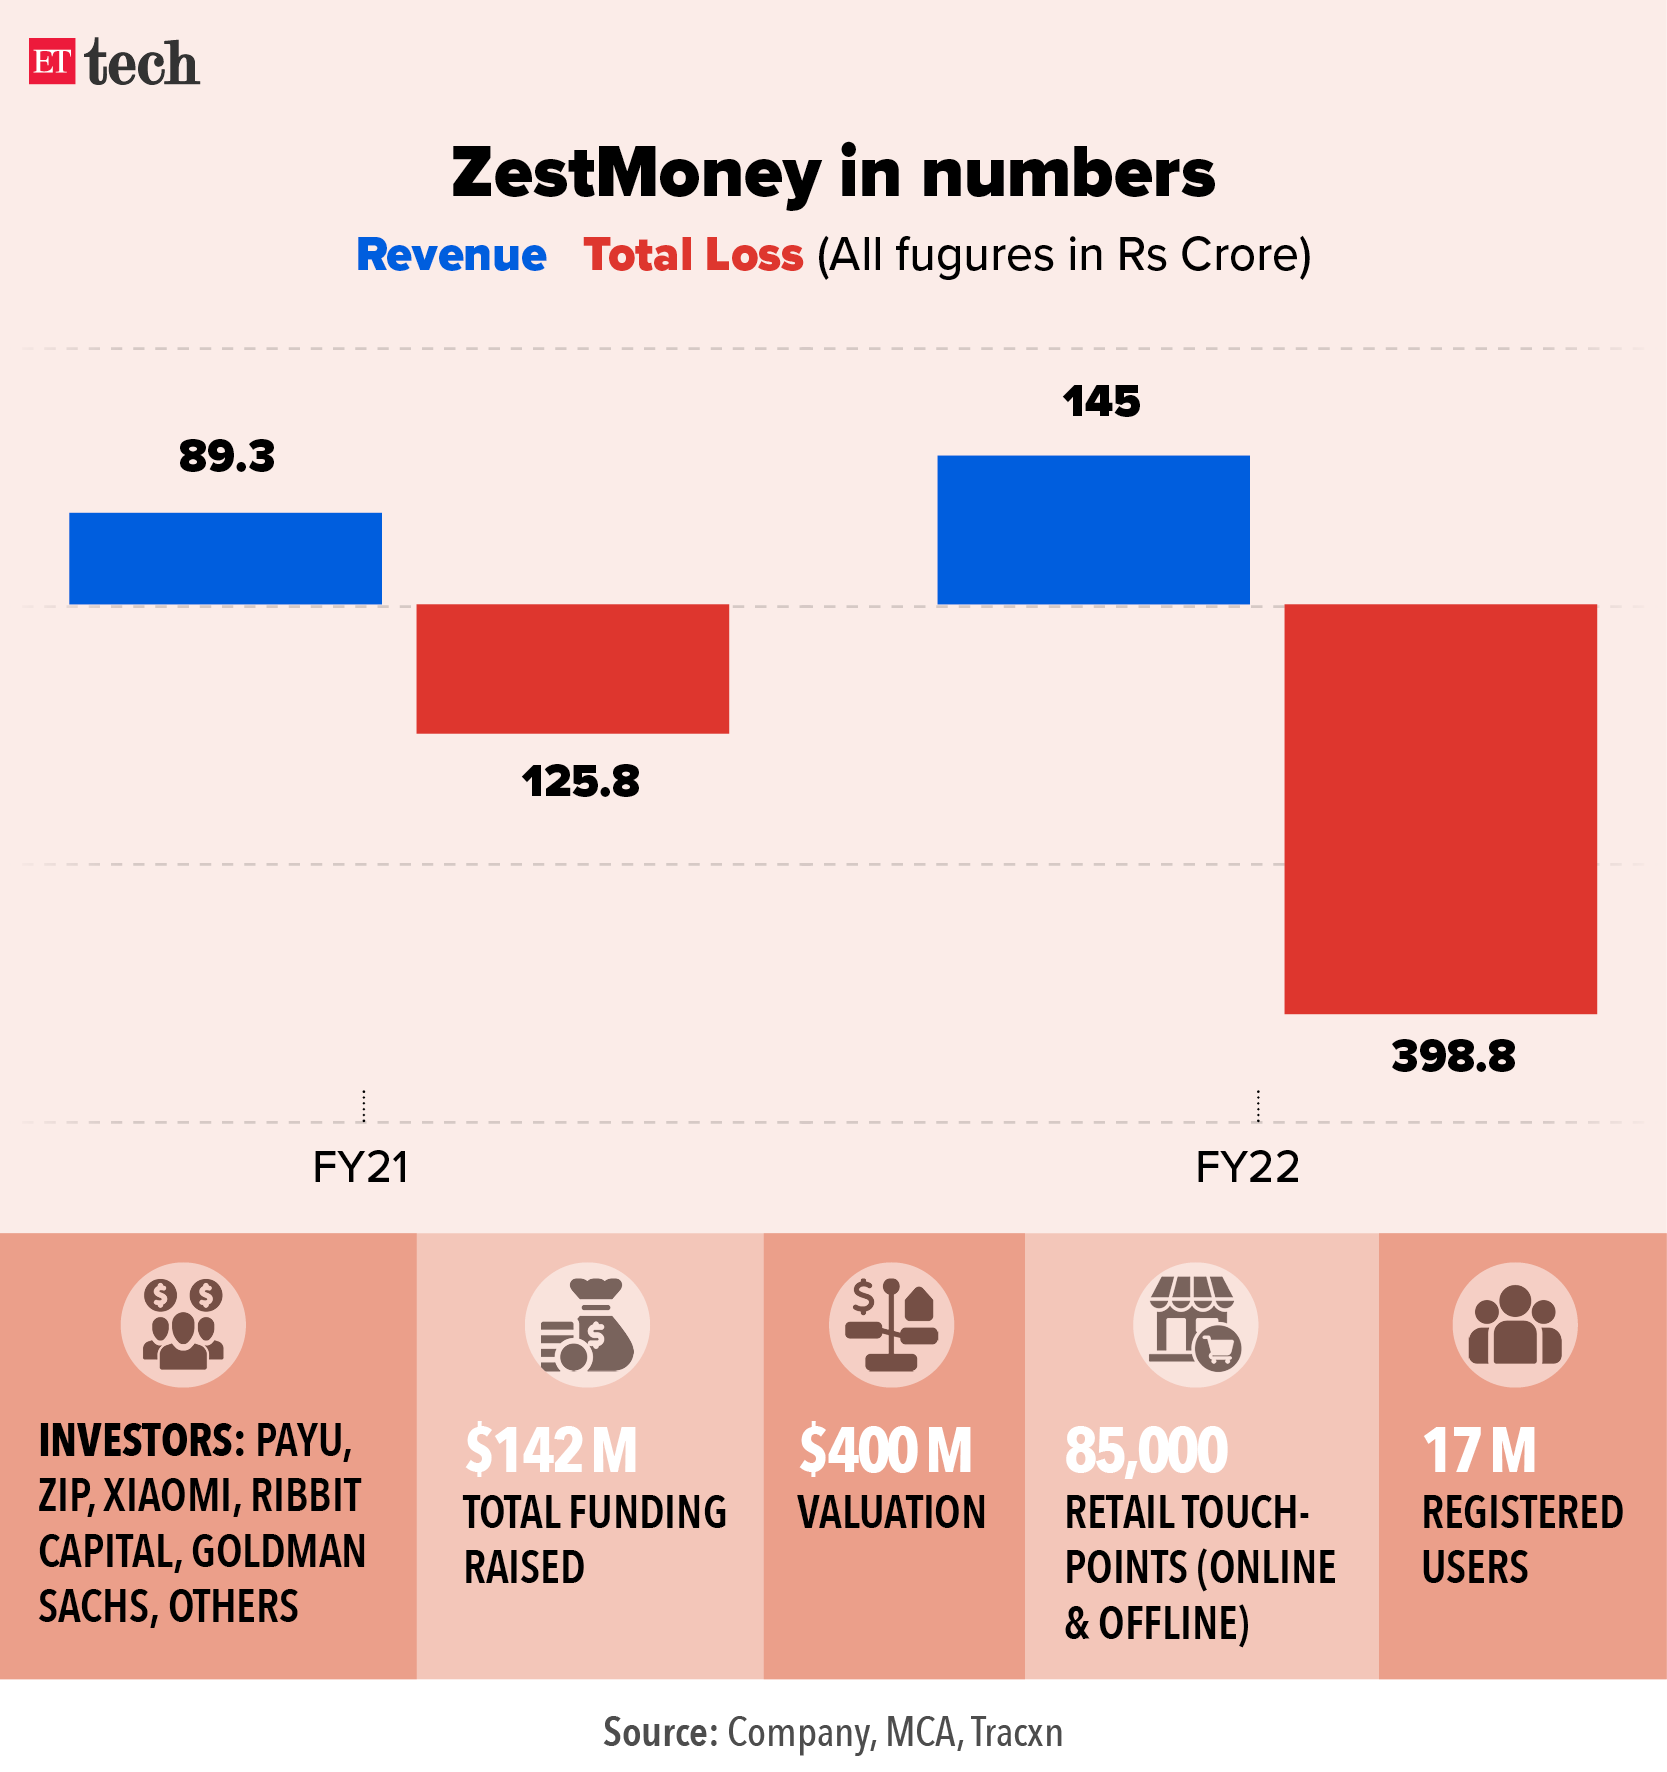 സെസ്റ്റ് മണി ഇടപാടിൽ നിന്നു പിൻമാറി PhonePe, Deal of PhonePay & Zest Money  - The Economic Times Malayalam